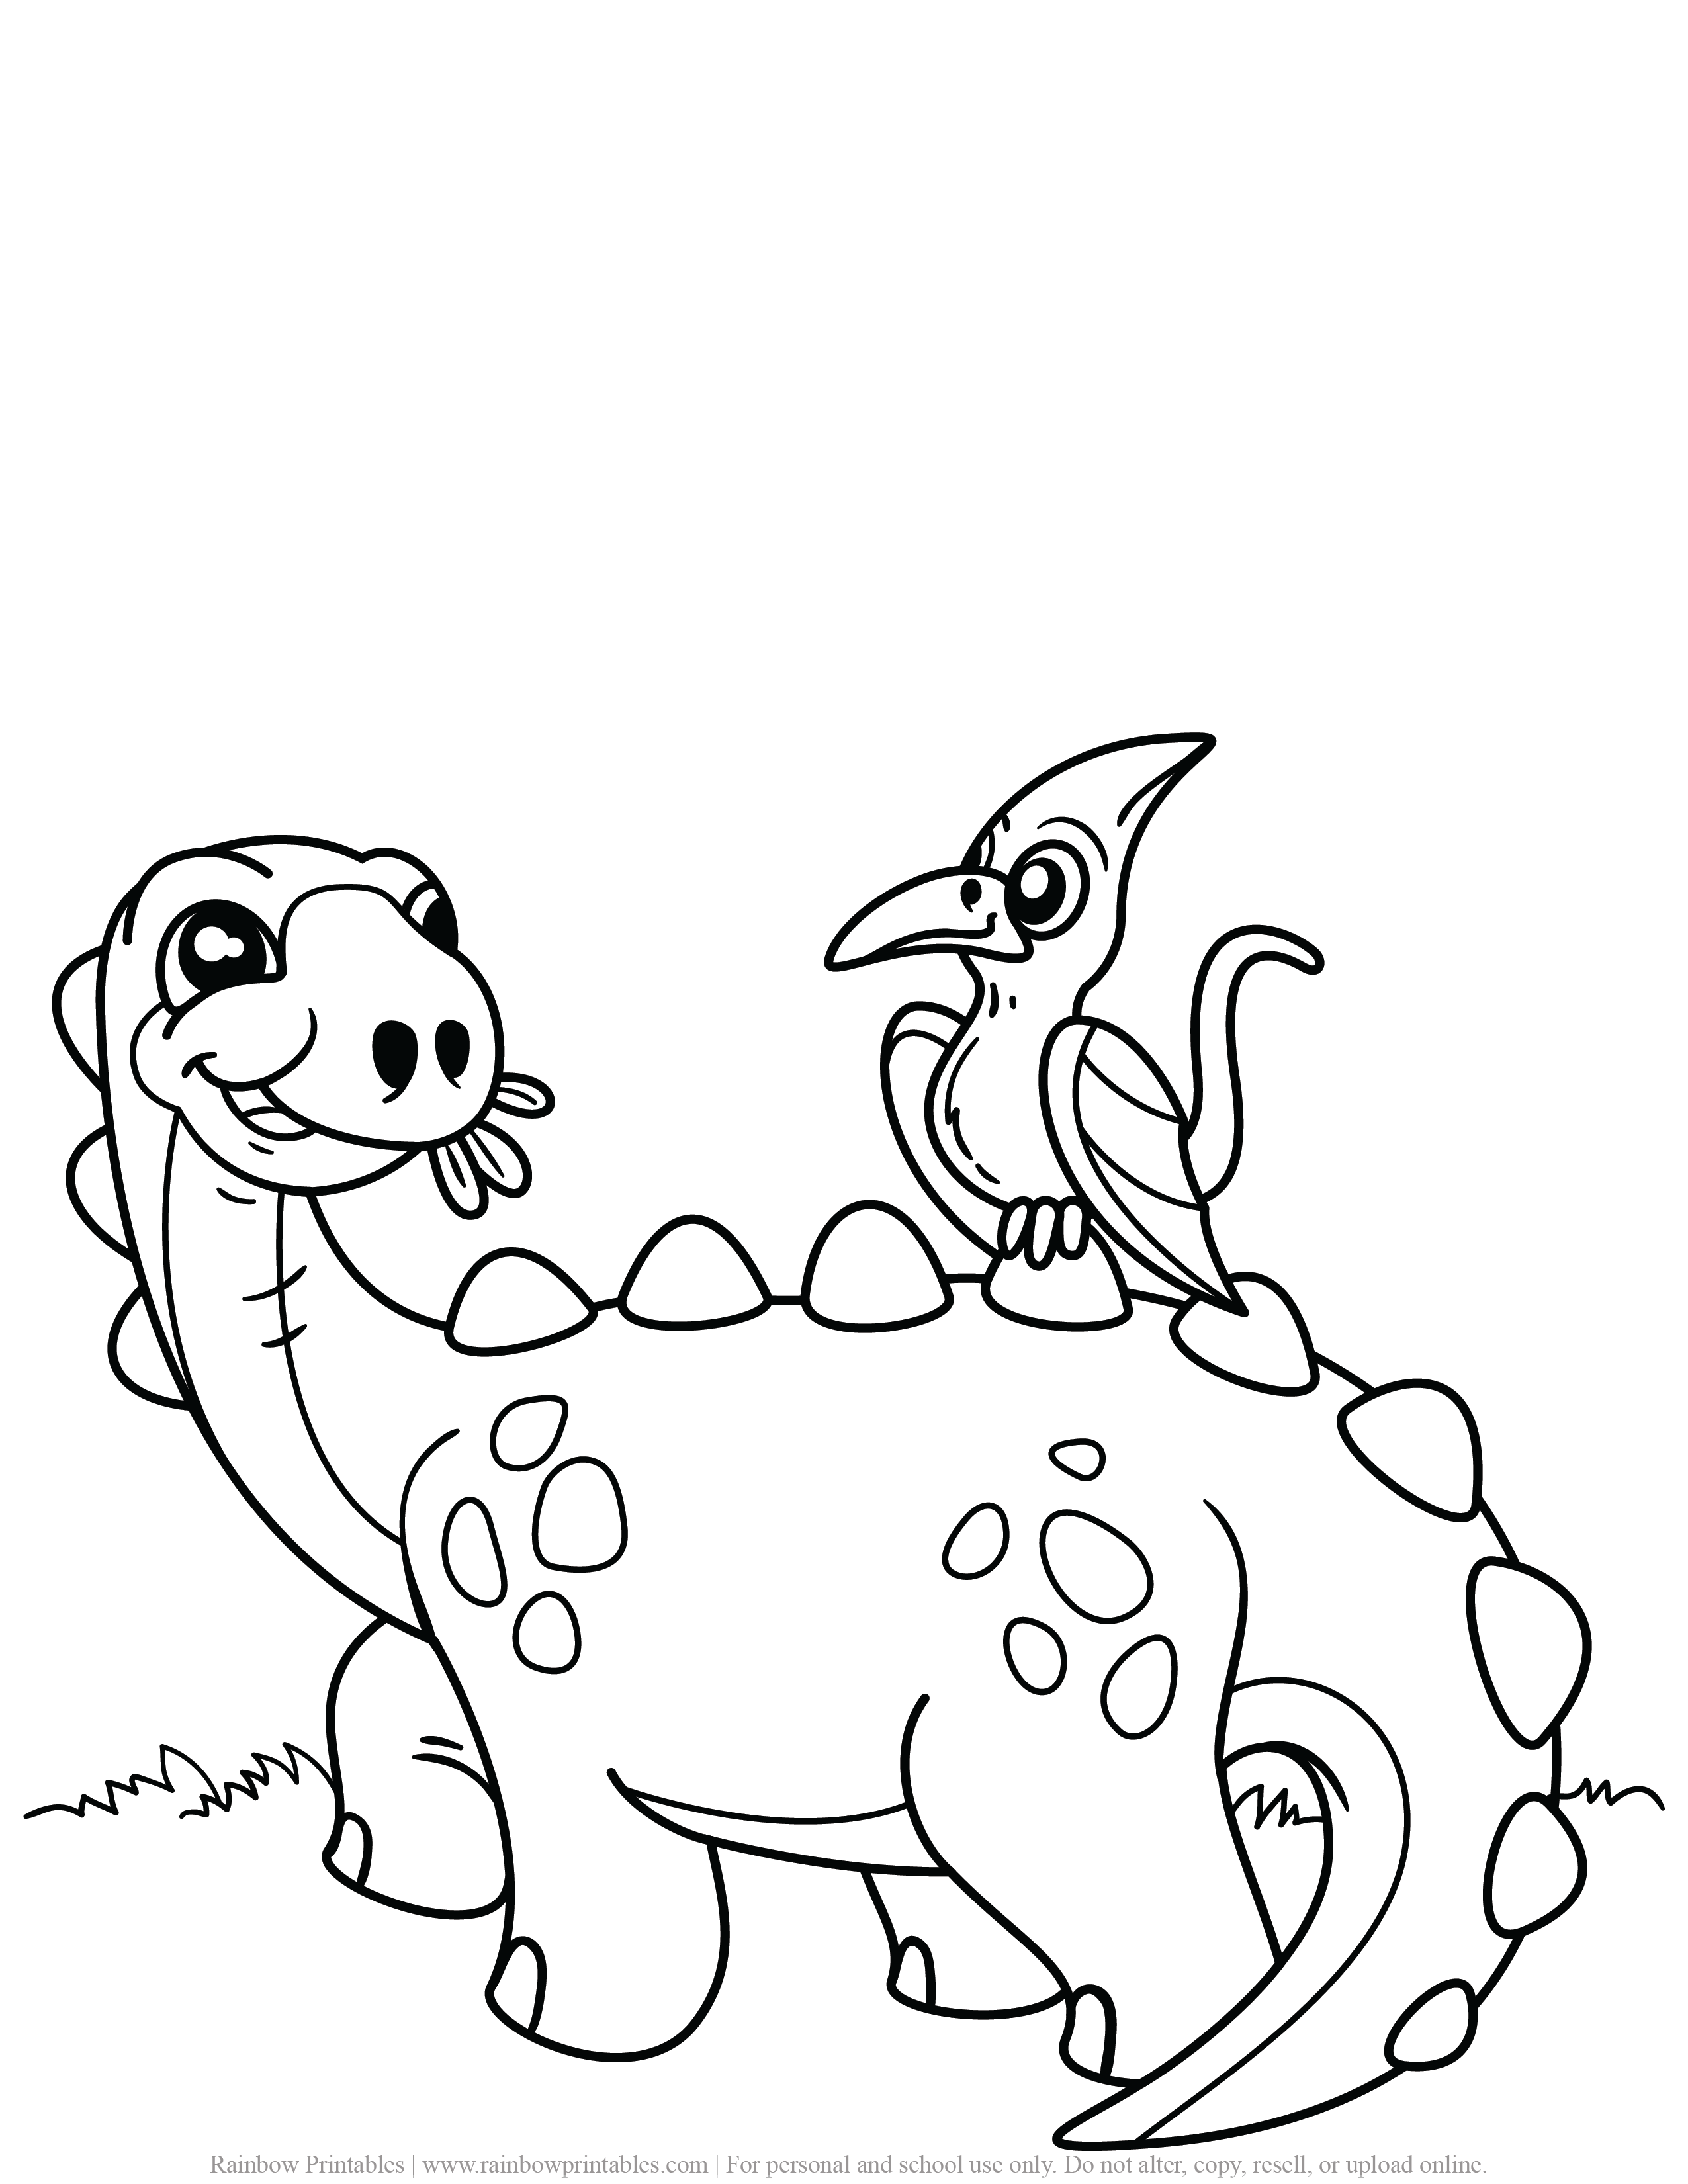 Dinossauro e seu amigo